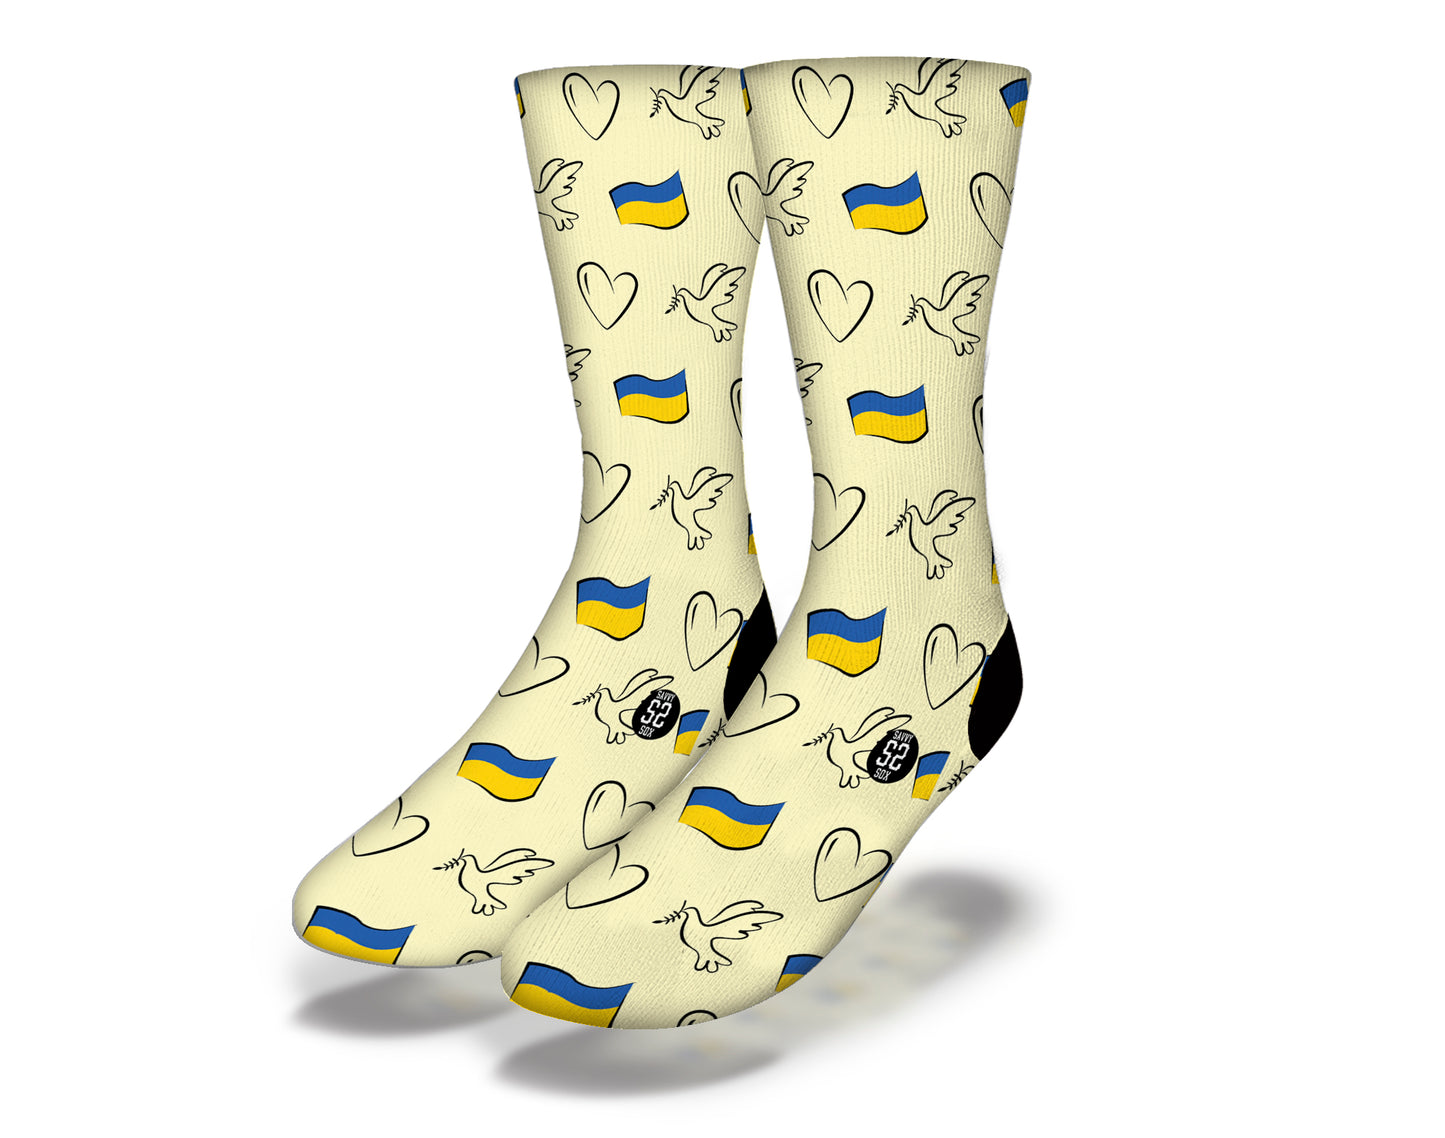 DOVES & HEARTS FOR UKRAINE Social Cause Socks